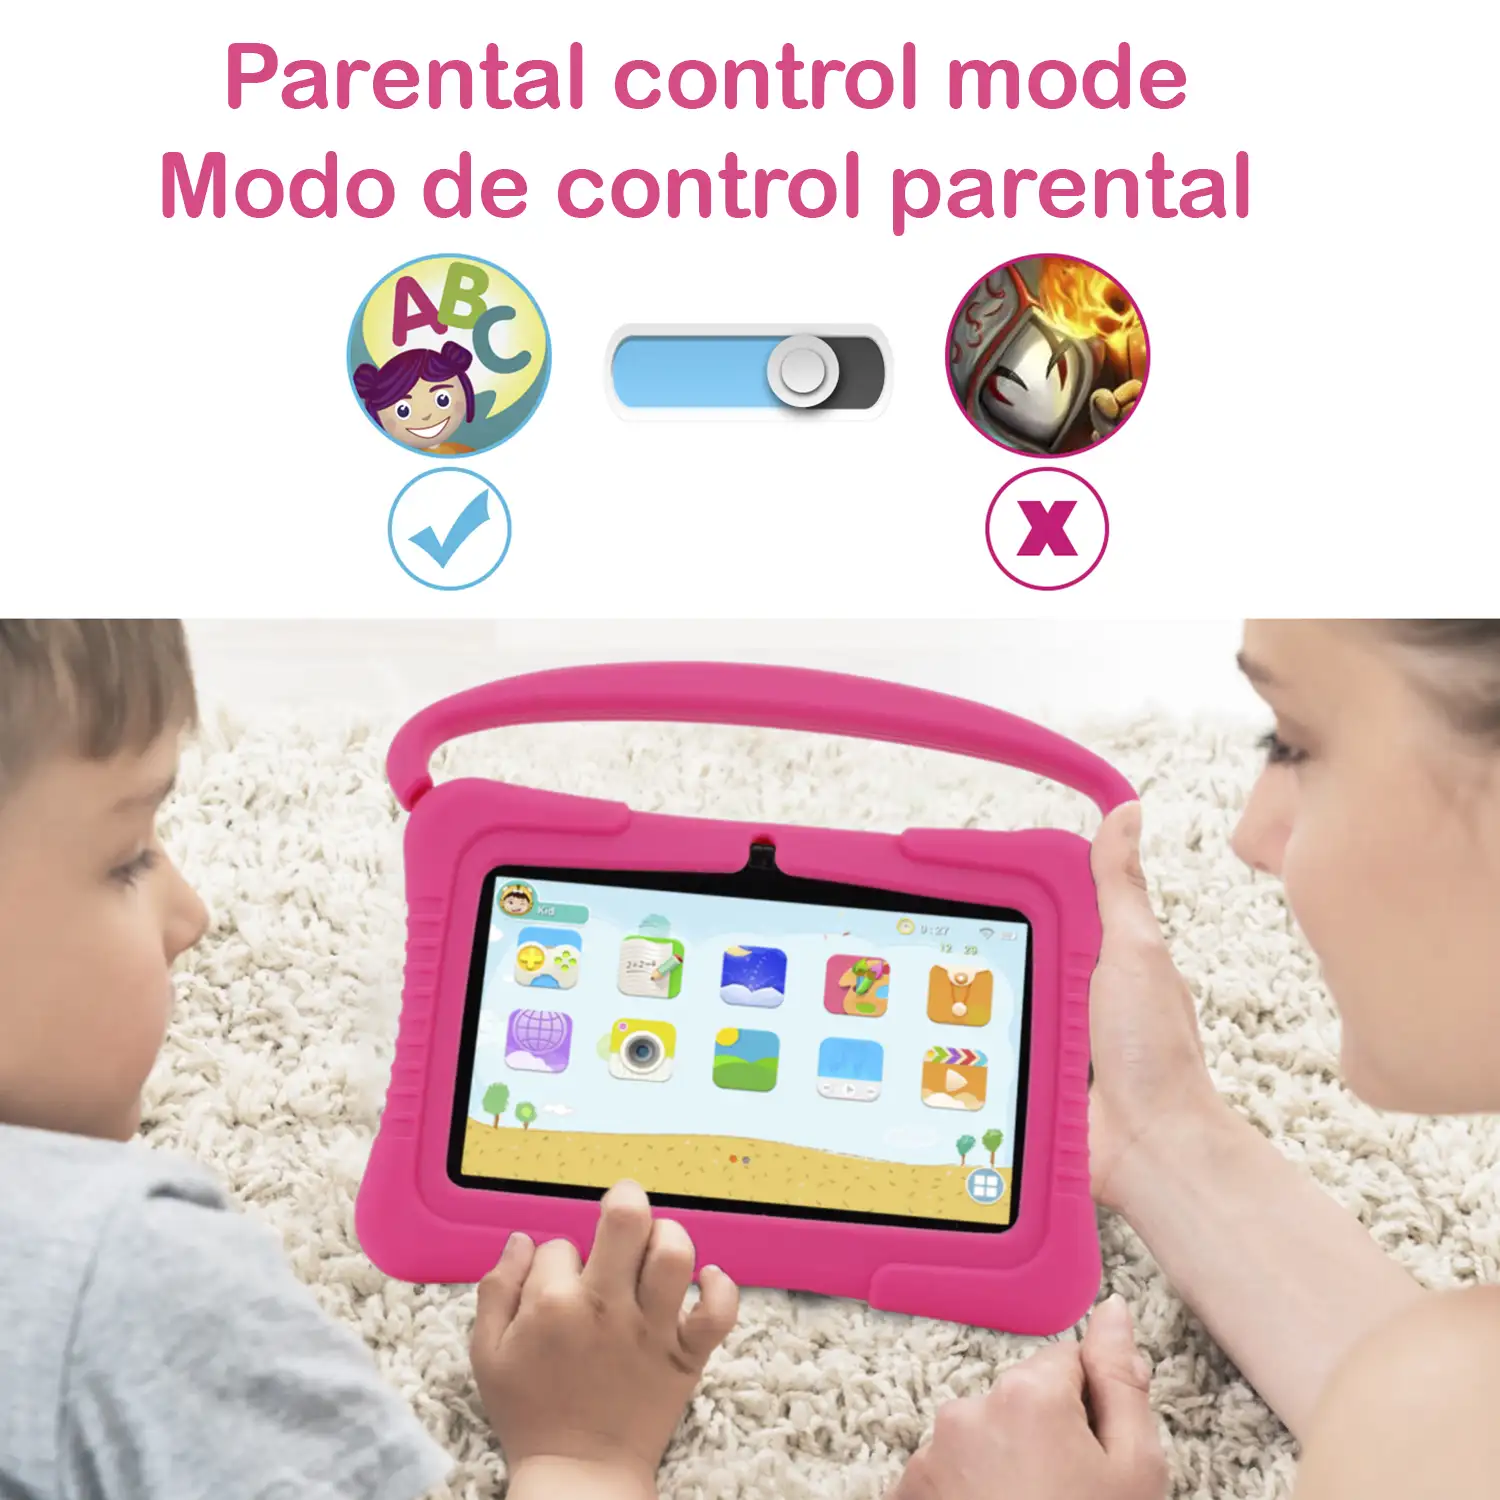 Tablet Infantil de 7 pulgadas Android Go 10 Quad Core, WiFi, con cámara y funda de silicona con asa y soporte. Control parental fácil.